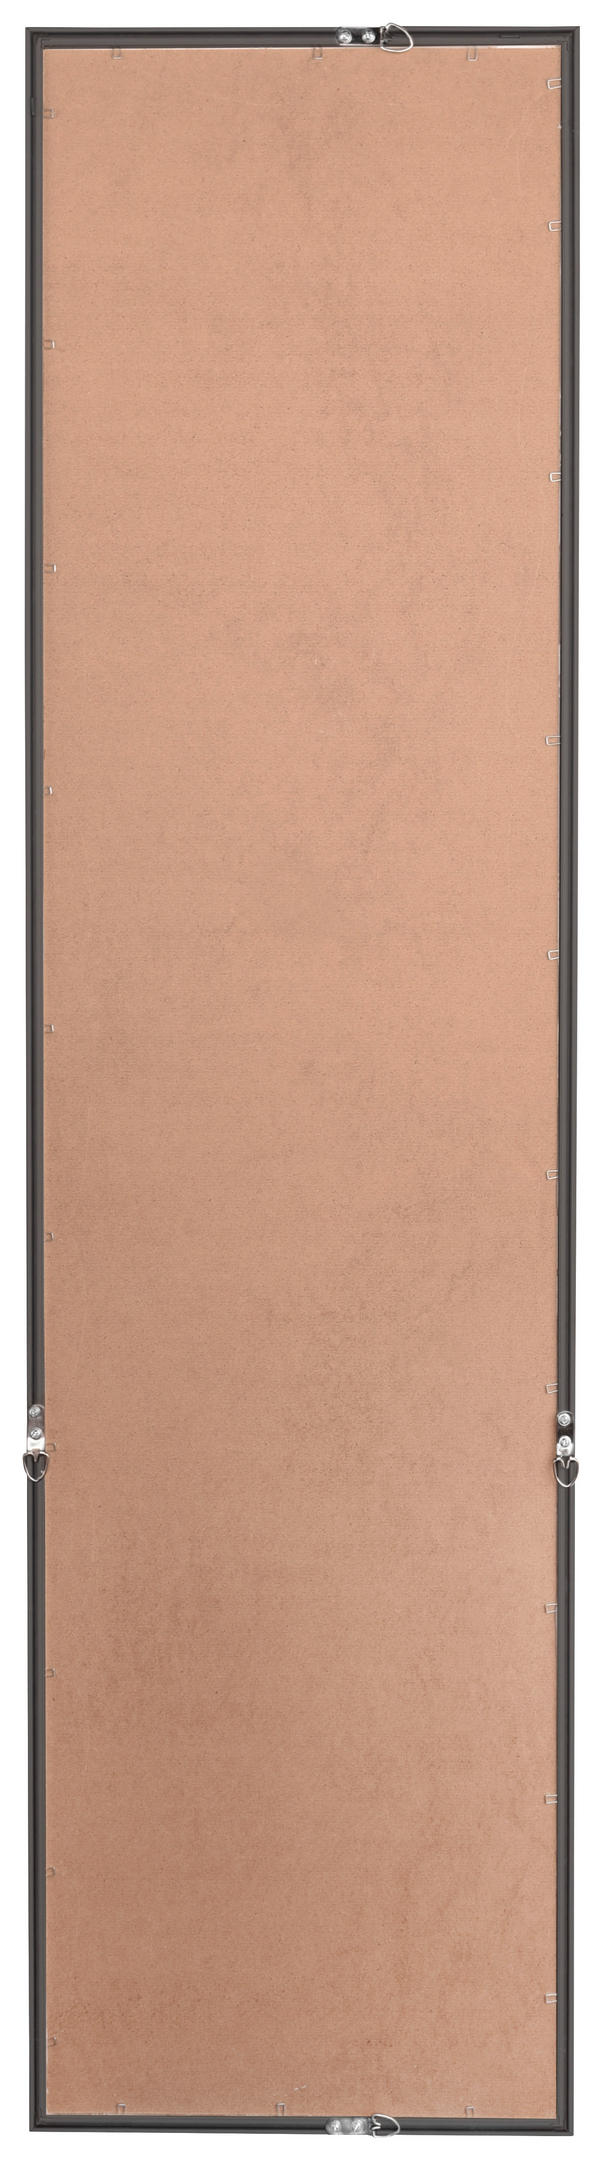 Rahmenspiegel Alea schwarz B/H: ca. 32x124 cm Alea - schwarz (32,00/124,00cm)